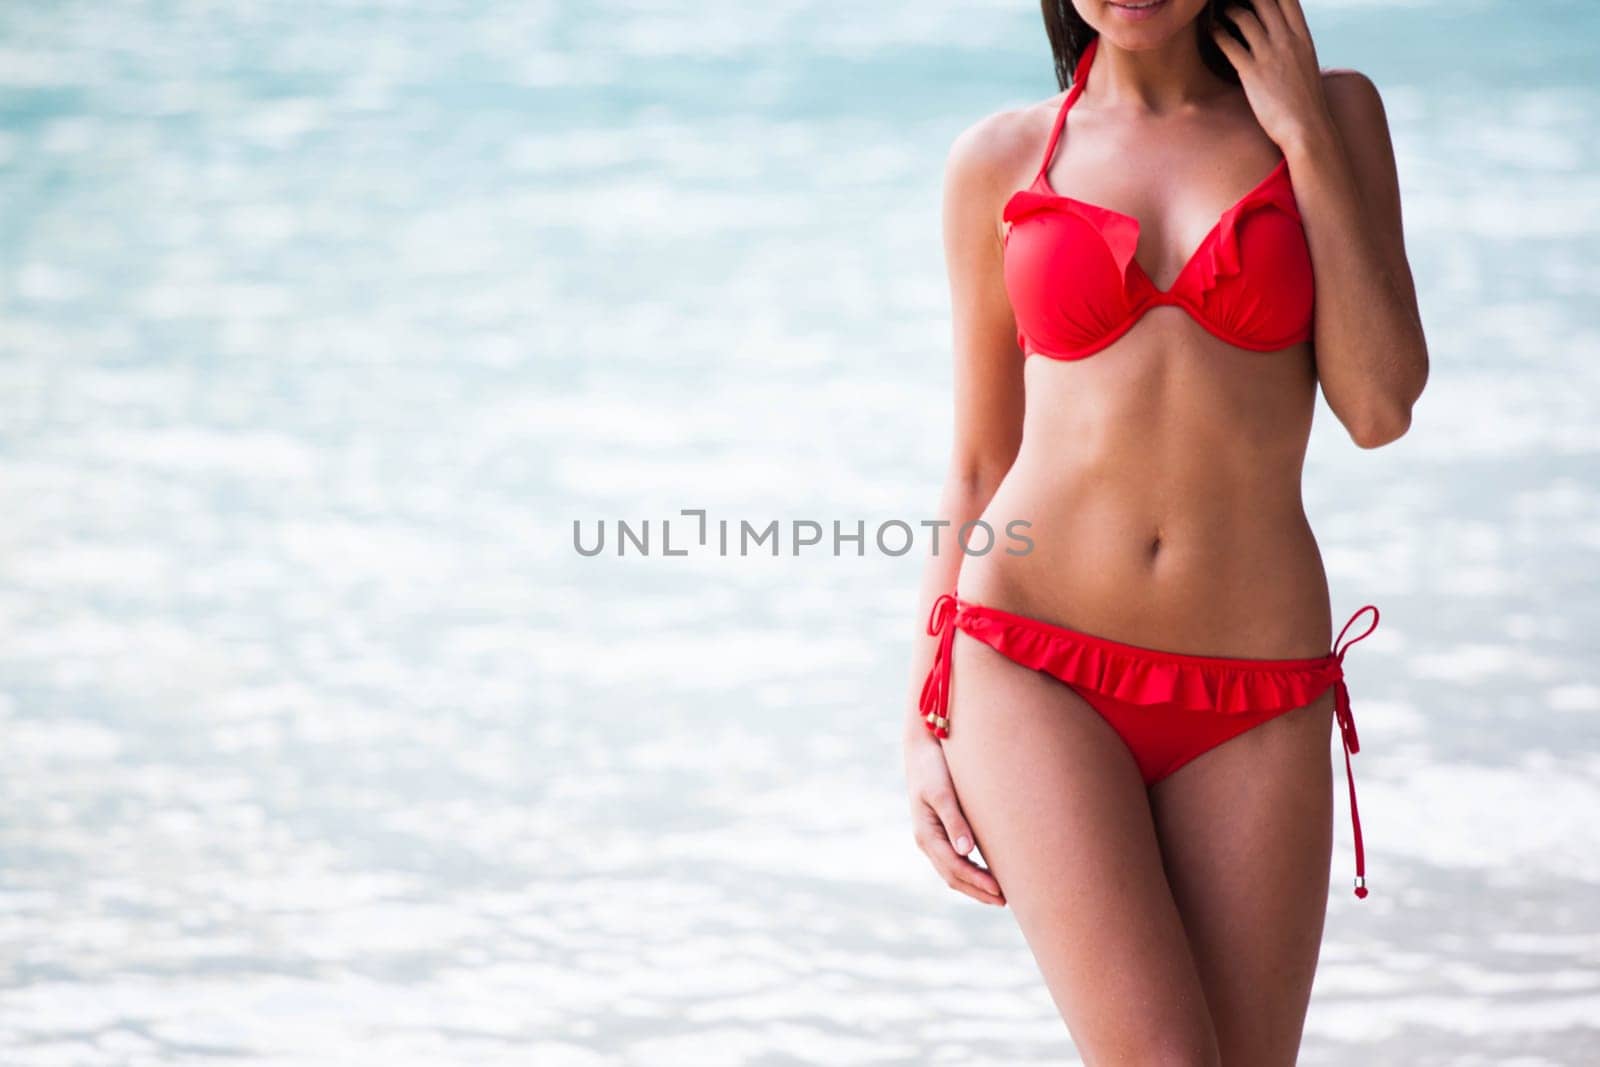 Woman in bikini posing in blue sea water by Yellowj